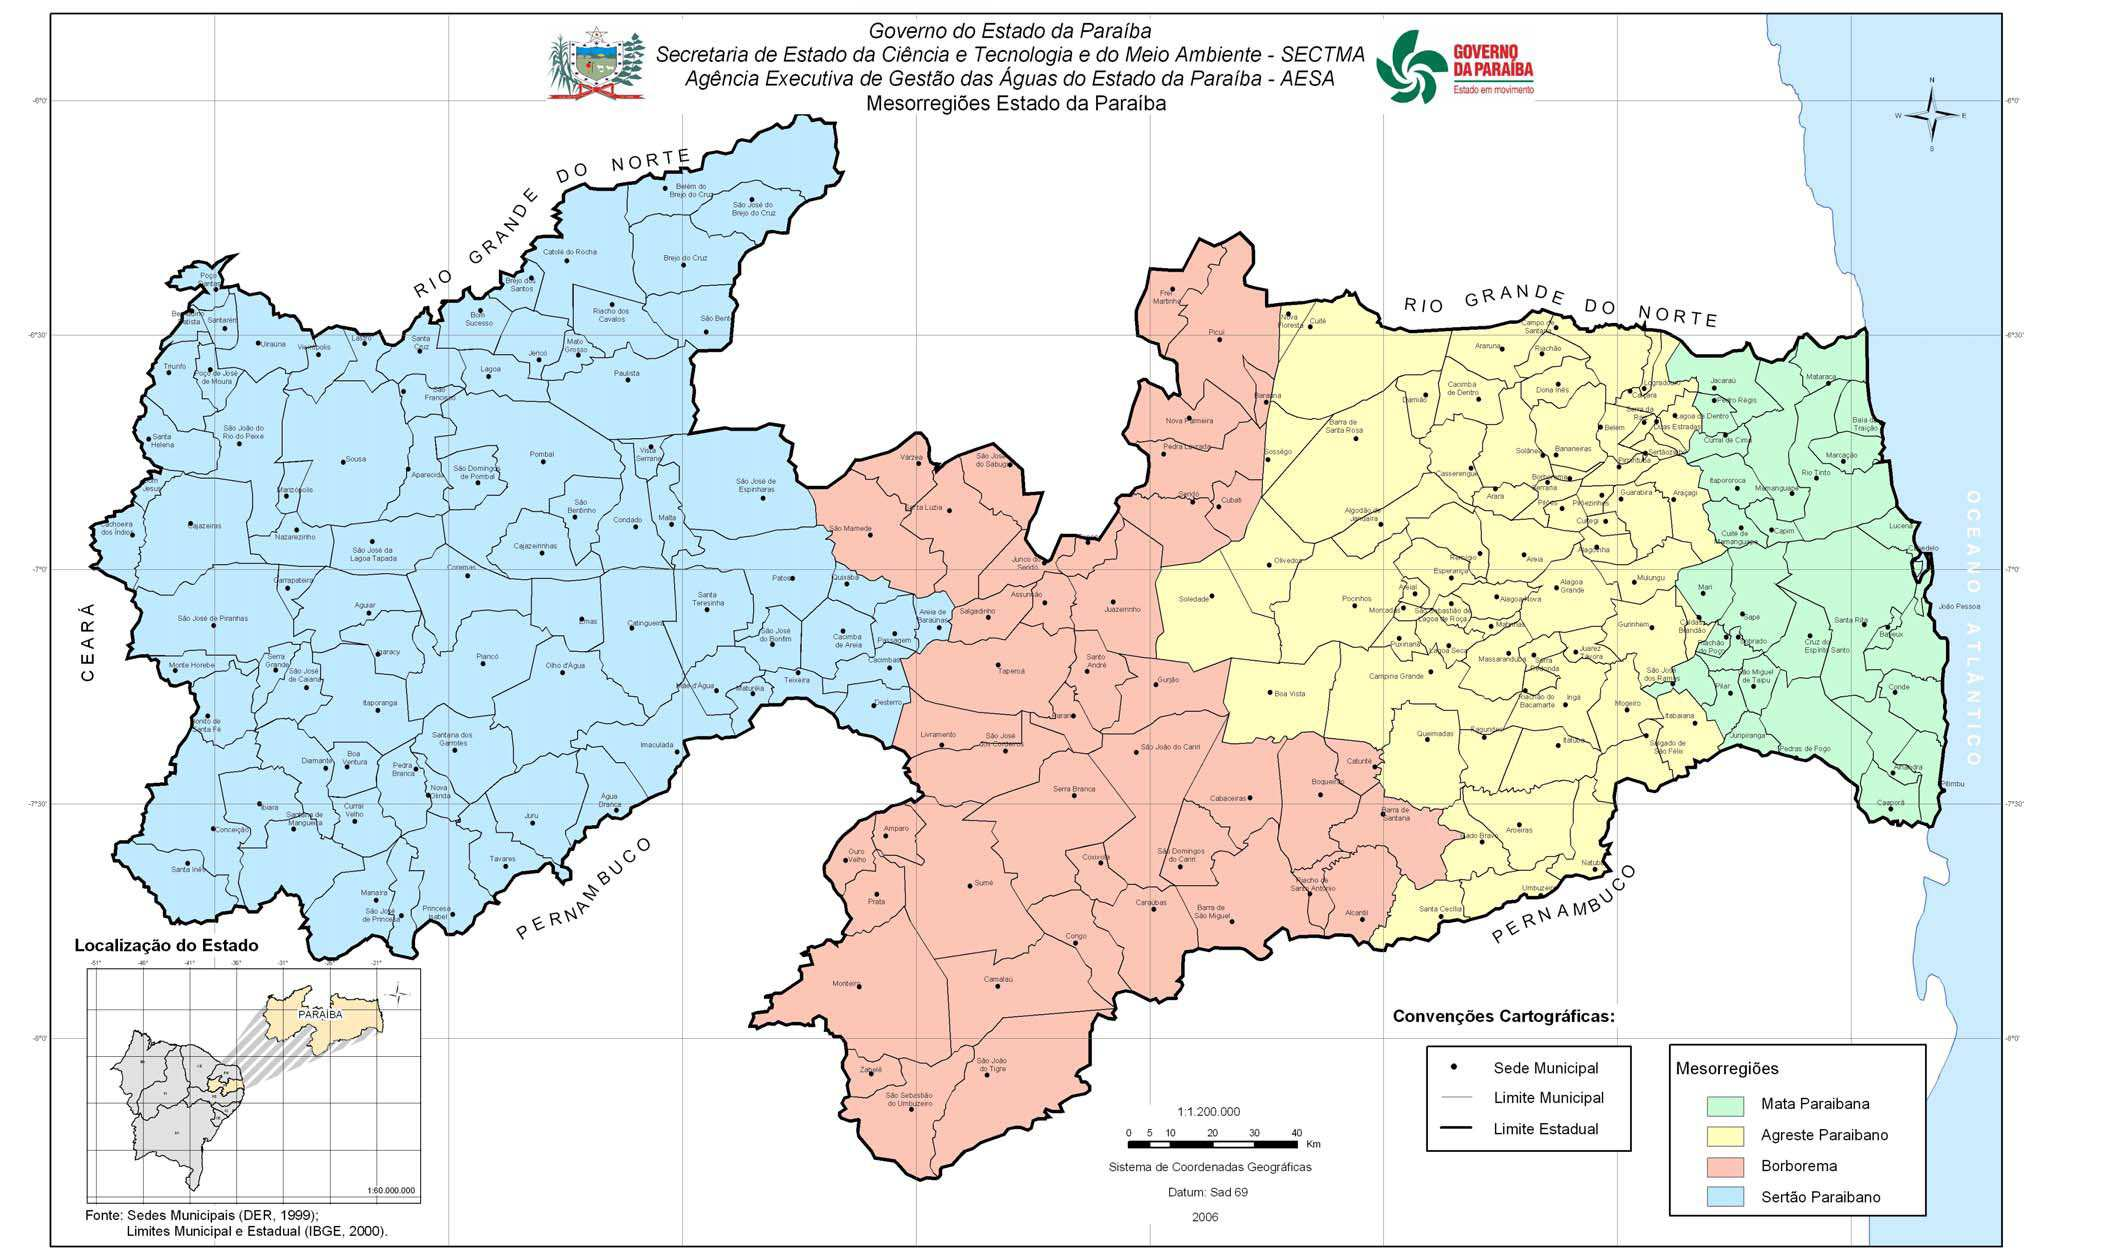 FONTE: PDI-IFPB (2010) A Zona Litoral-Mata corresponde à Mesorregião Mata Paraibana, definida pelo IBGE e integrada pelas seguintes Microrregiões Geográficas: Litoral Norte, Sapé, João Pessoa e